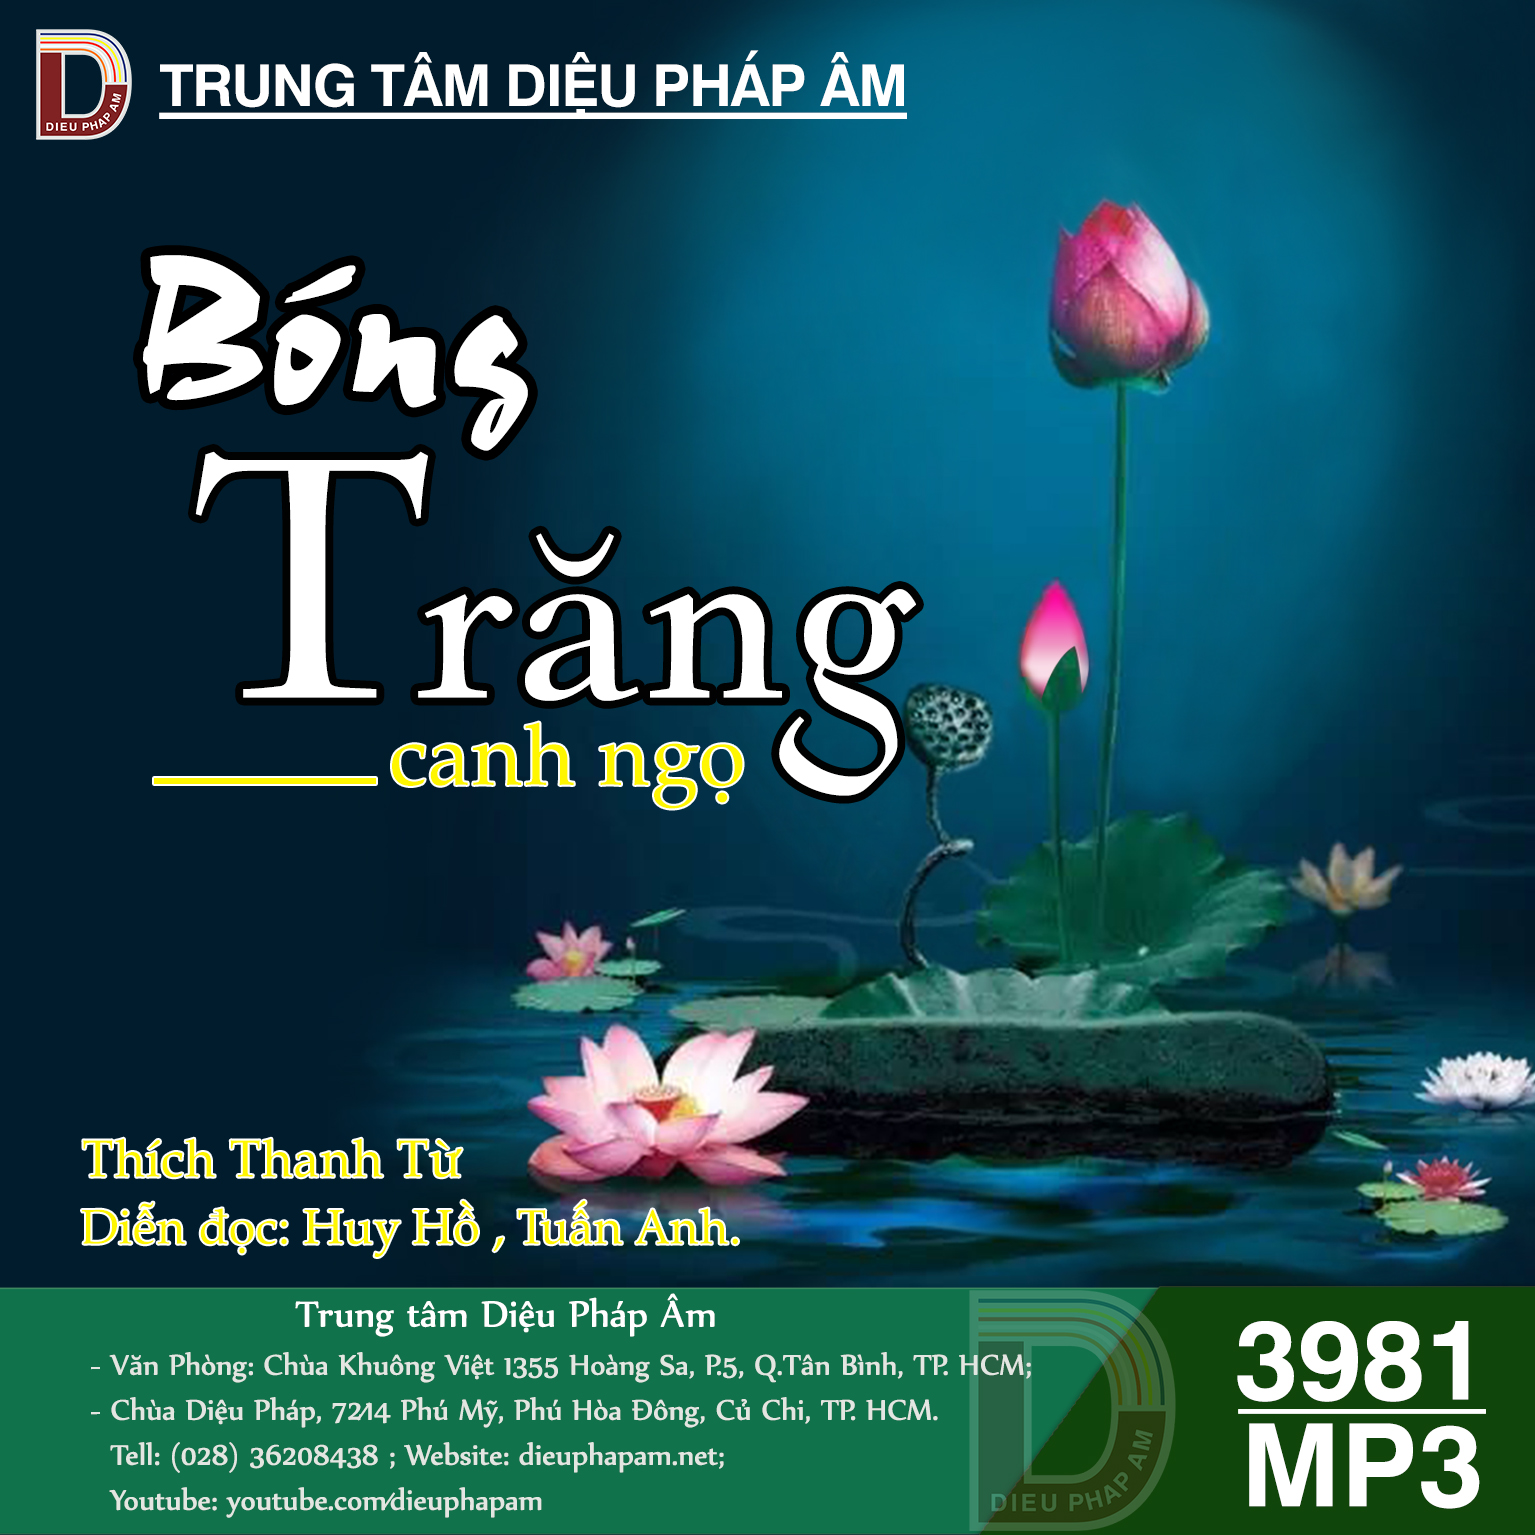 Bóng Trăng Canh Ngọ